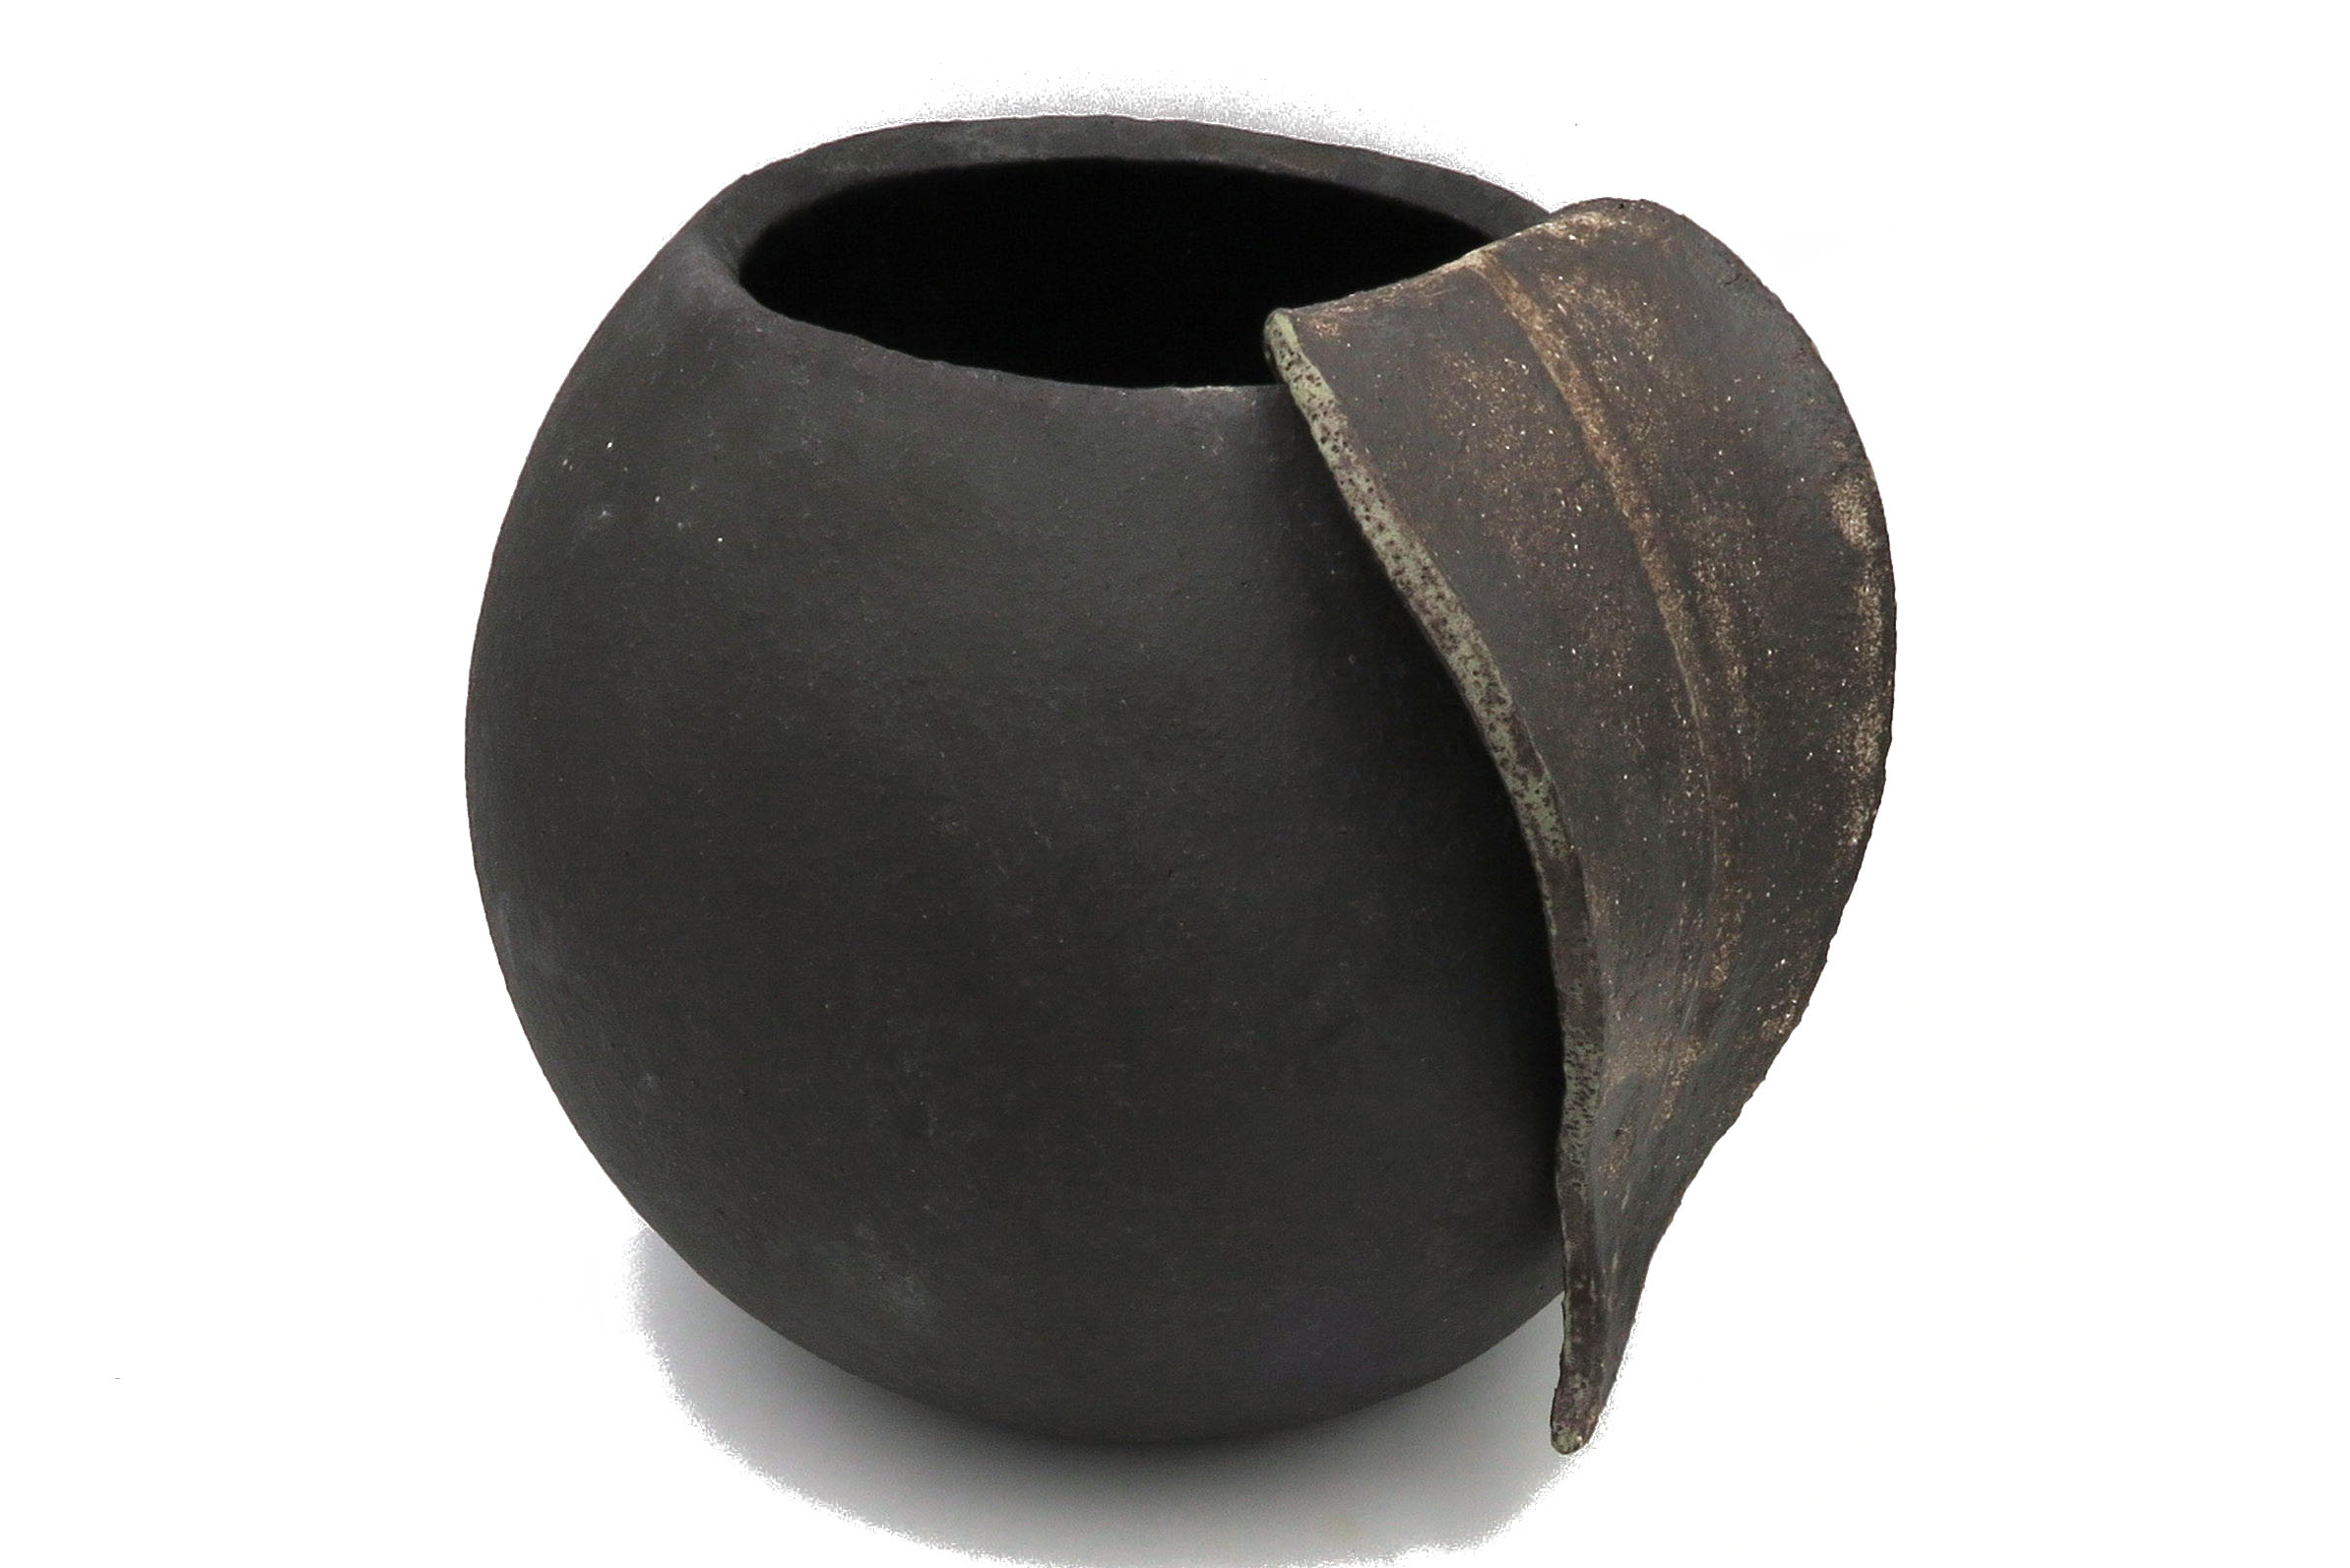 Kugel-Vase mit gebrochener Oberfläche  22 cm